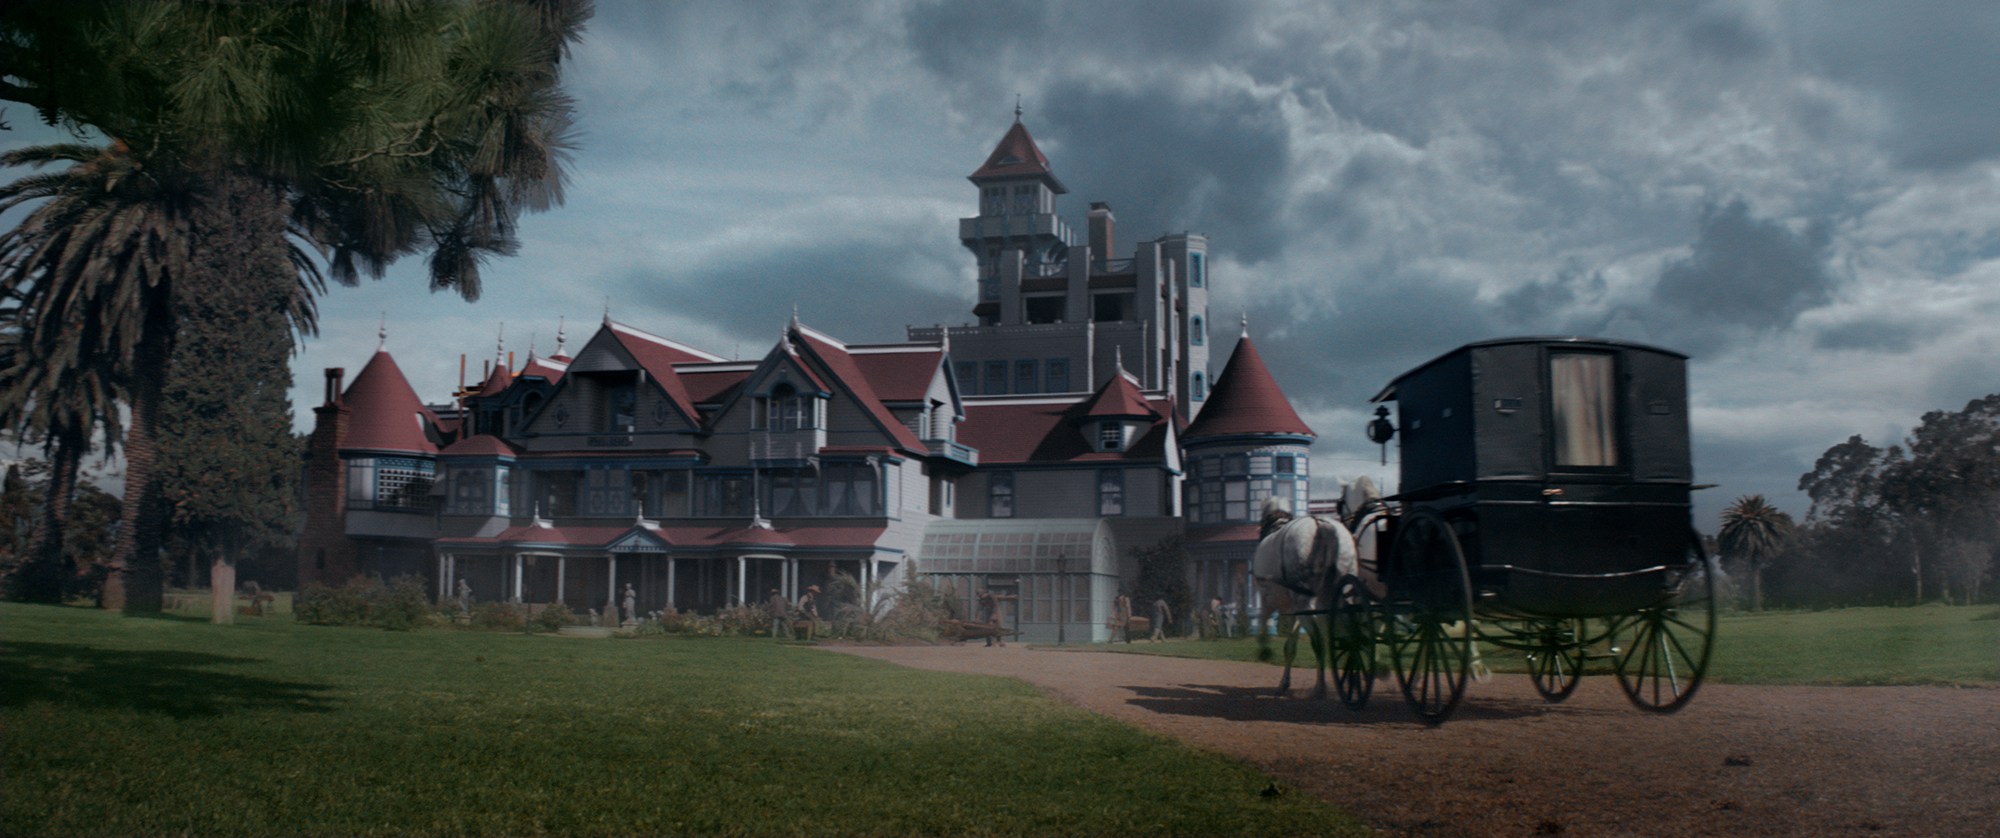 Todos flotan en el nuevo póster de ‘Winchester: La casa que Construyeron los Espíritus’